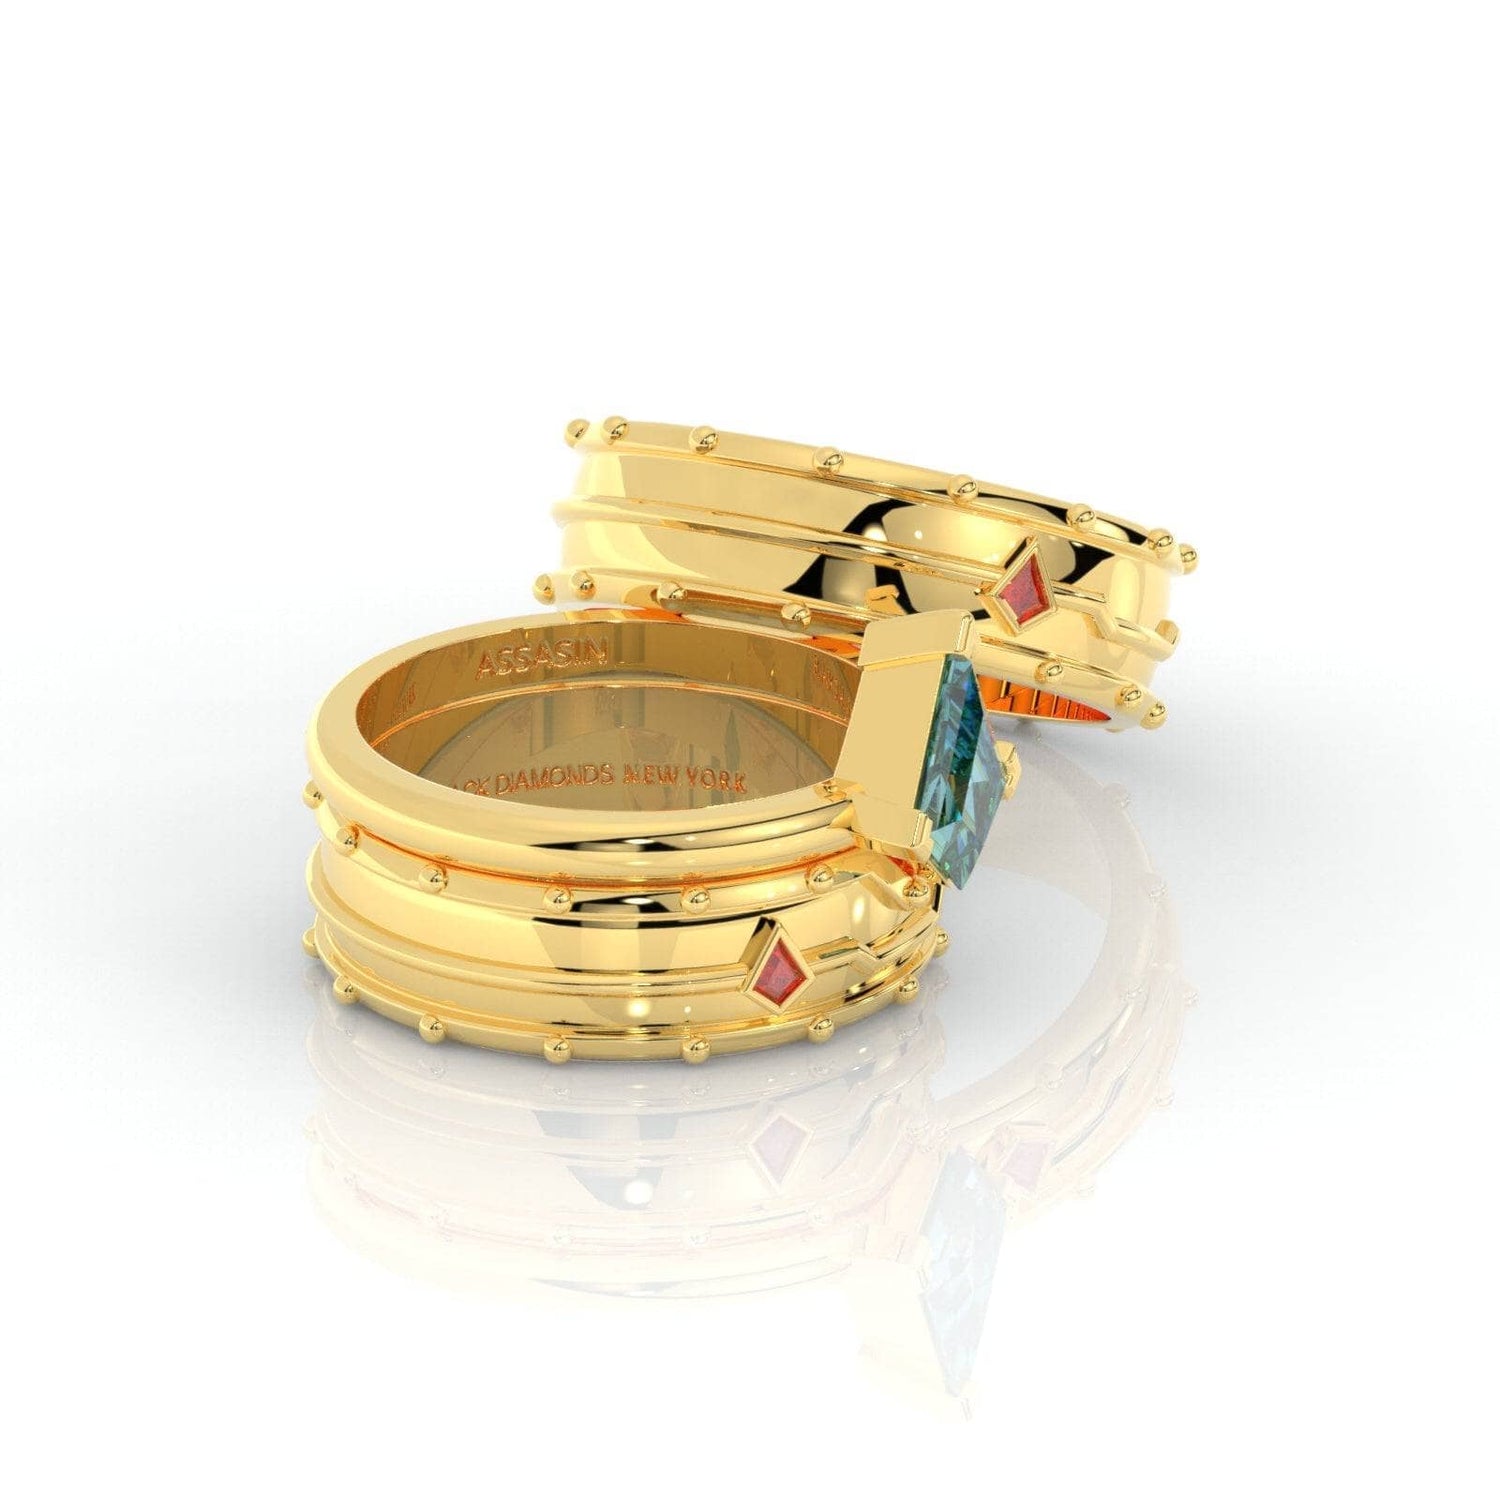 Assasin's Promise Ring (Unisex)- 14k Yellow Gold Video Game Inspired Rings - Black Diamonds New York